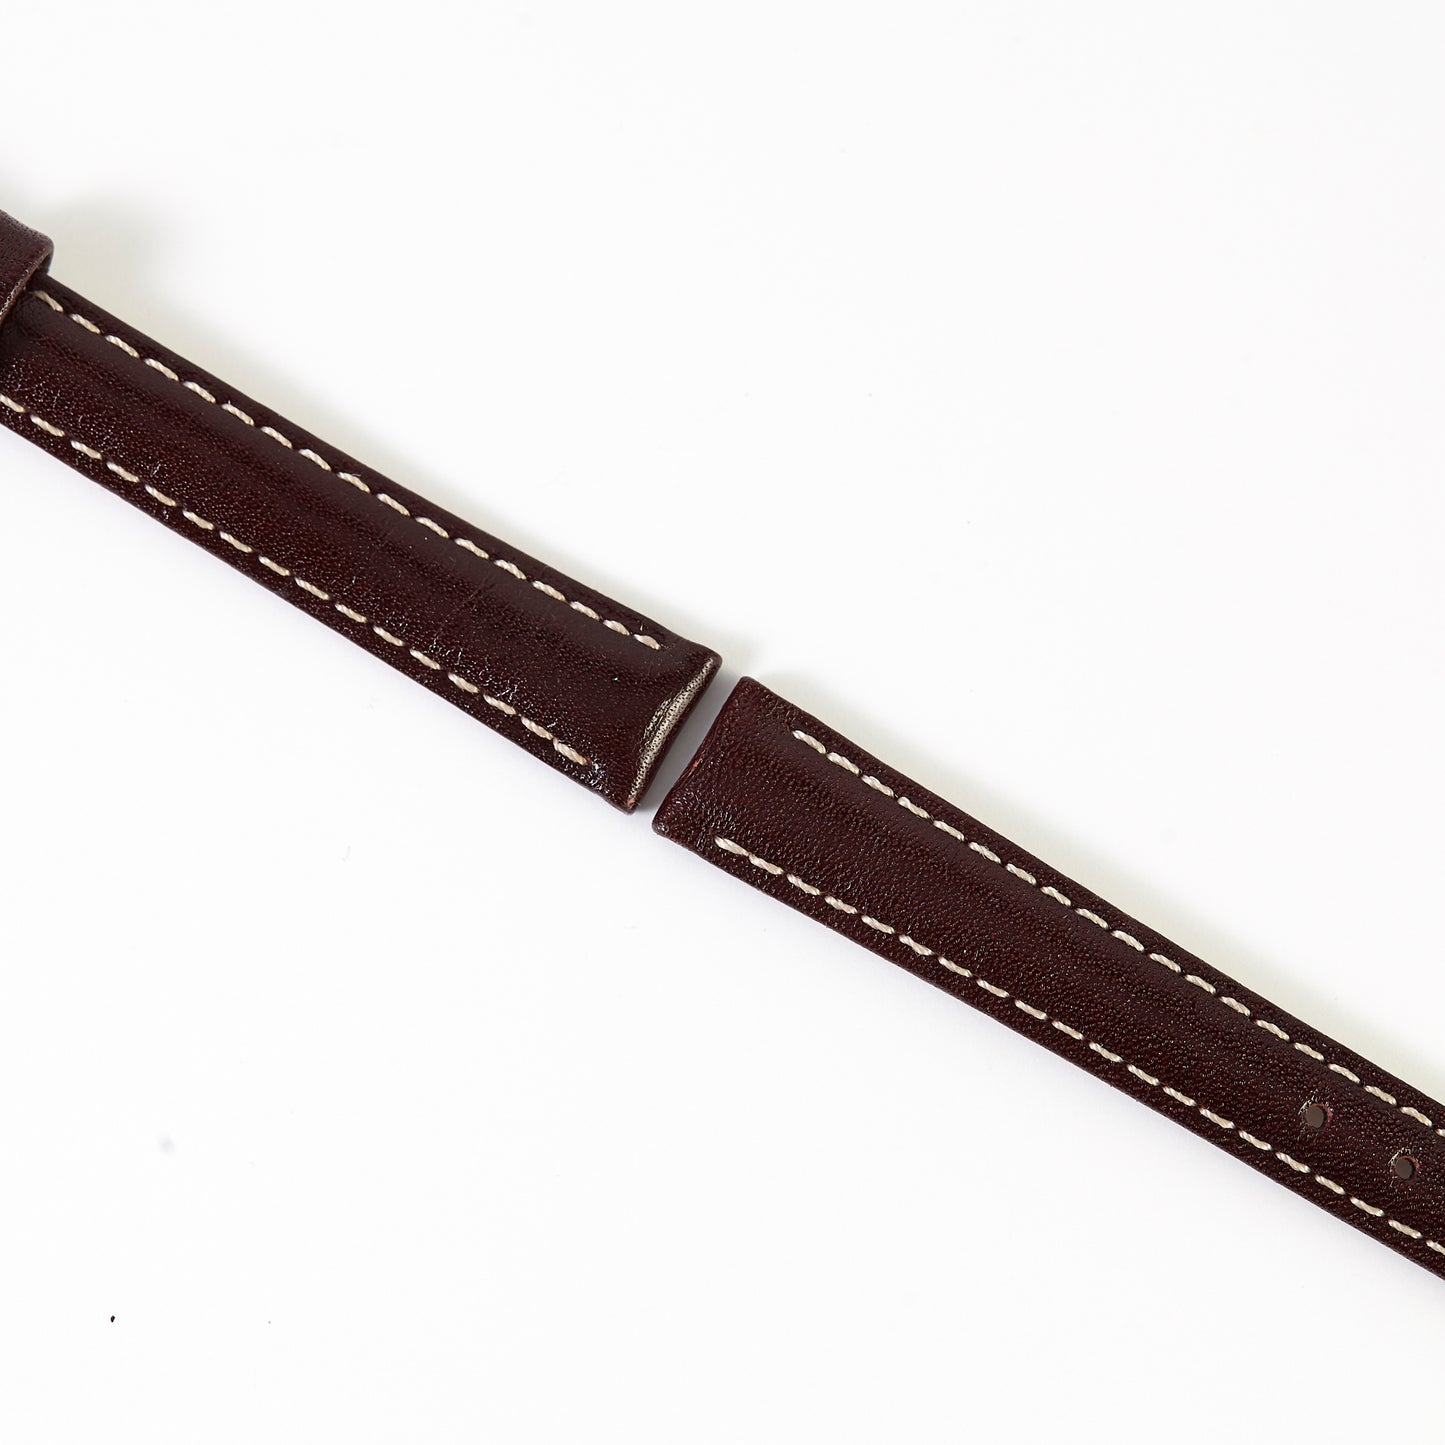 Ecclissi 12mm x 10mm Dark Brown Leather Ladies Strap 22485